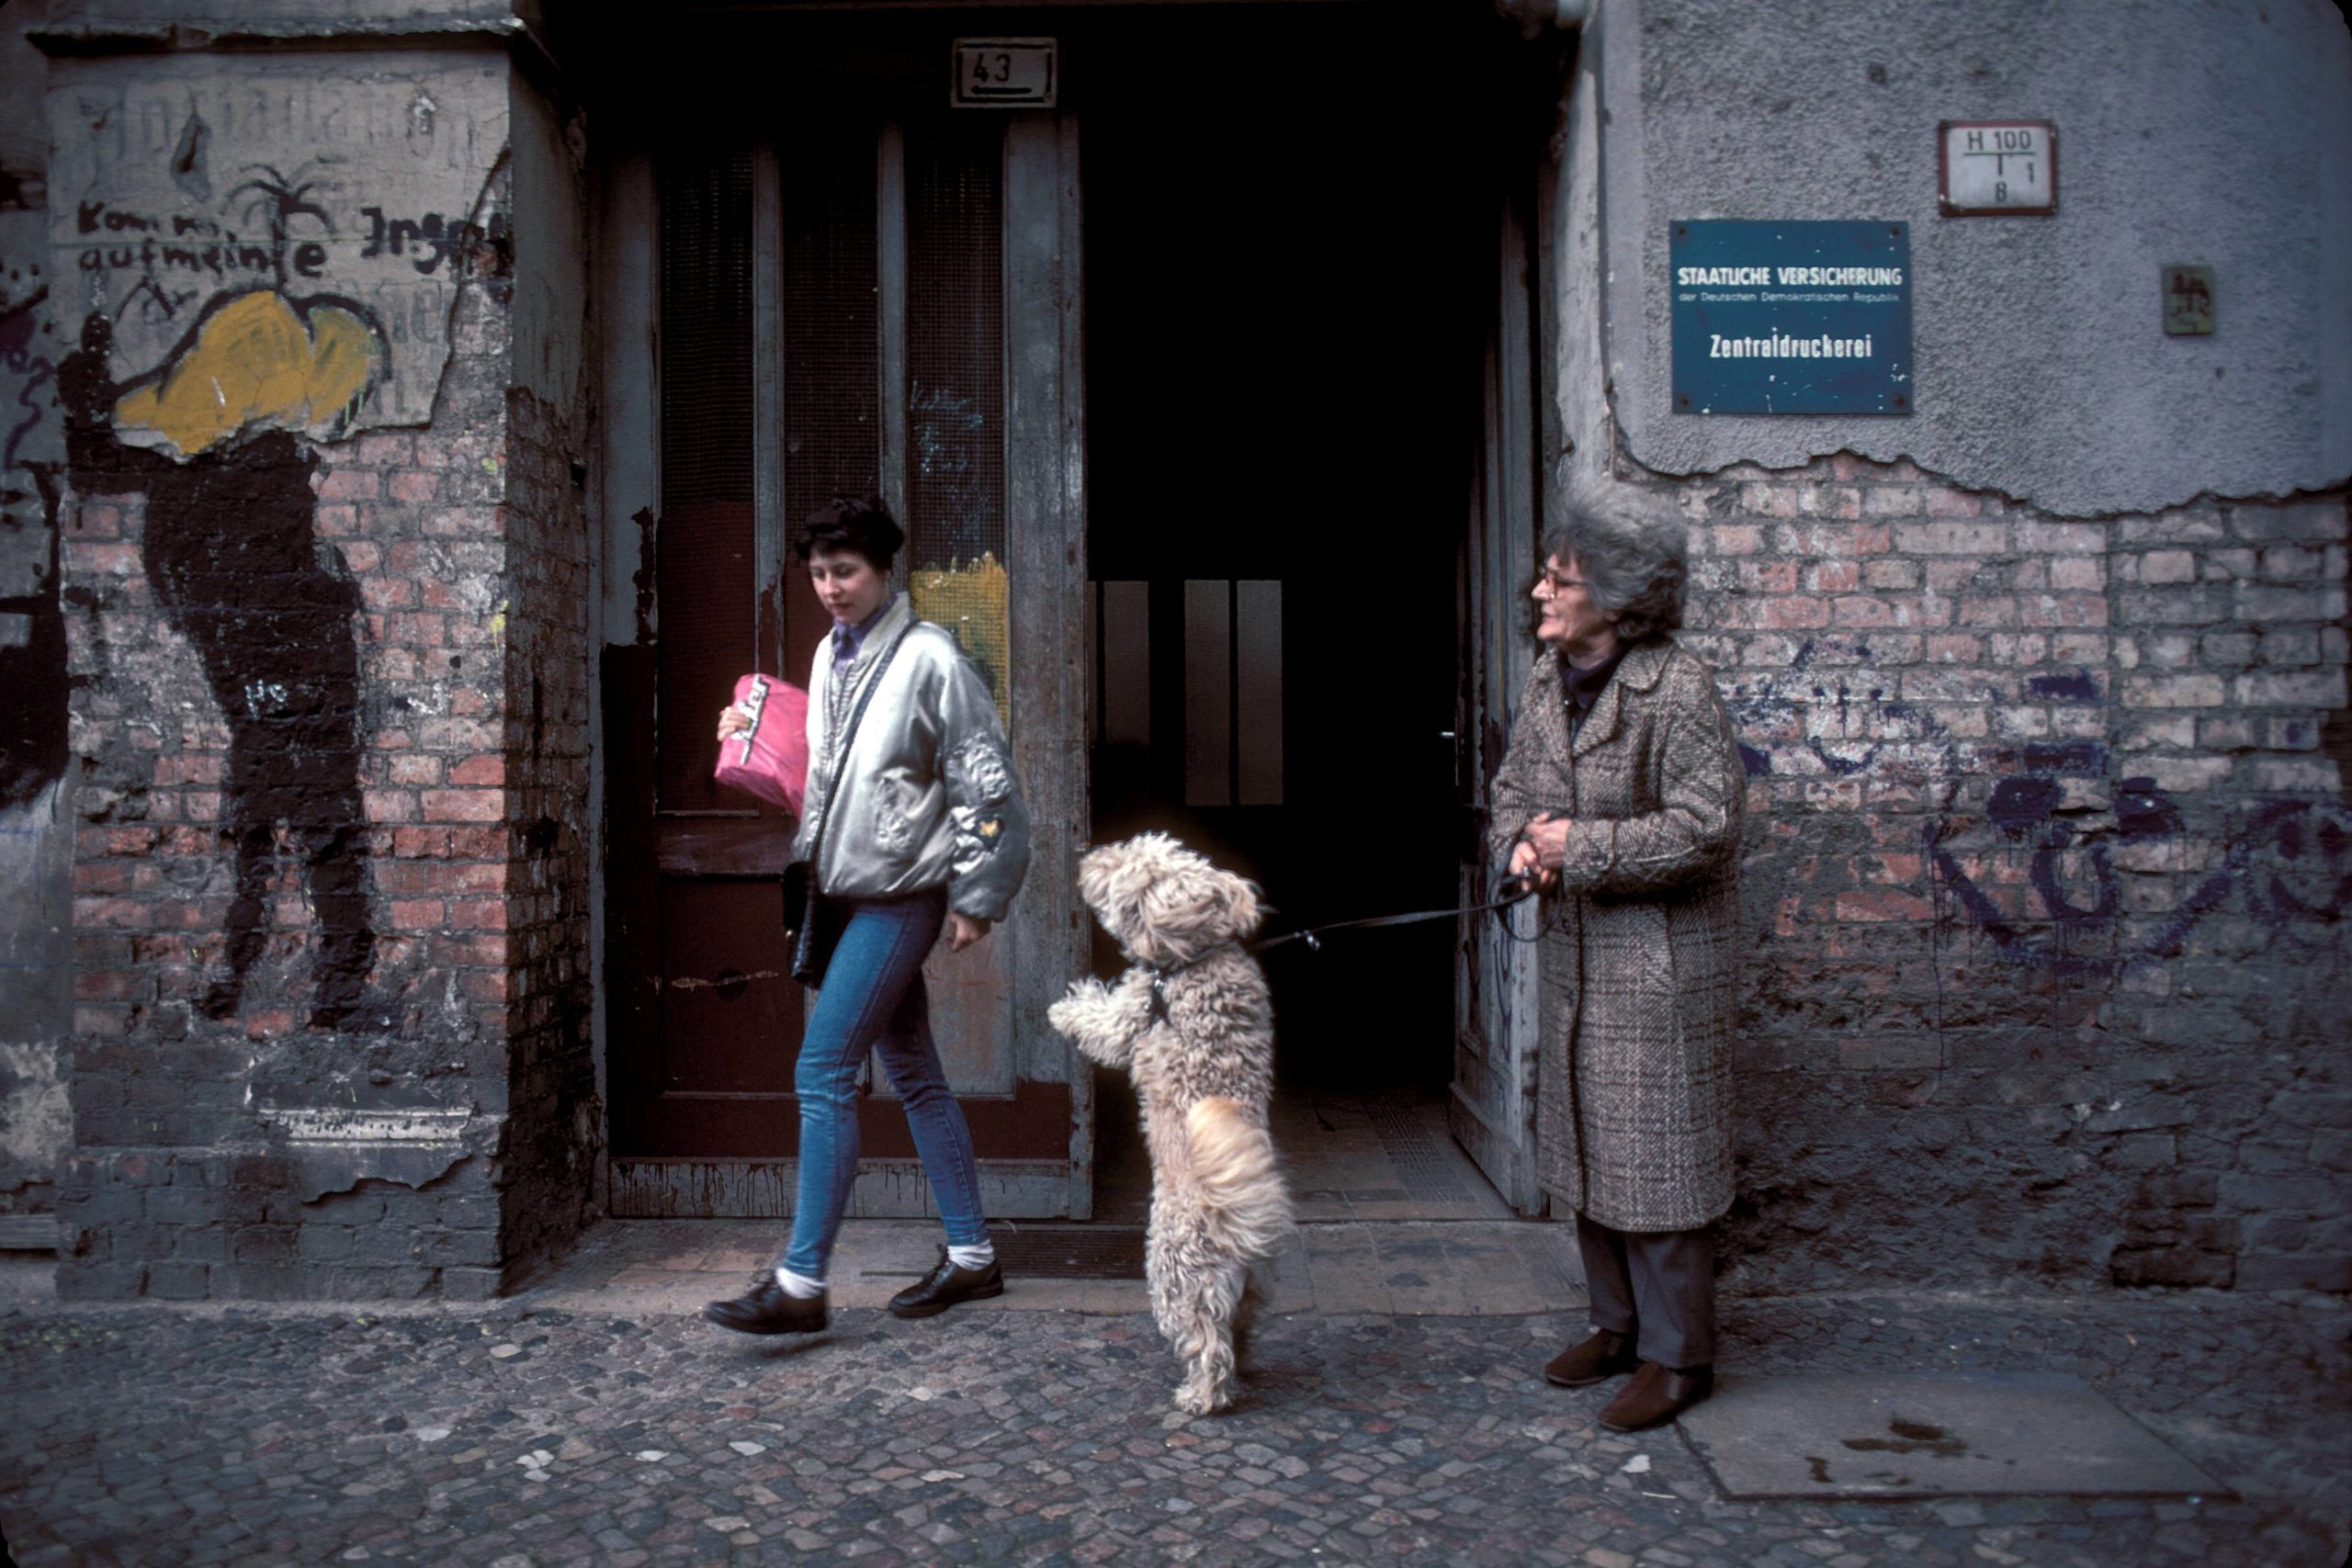 Hunde in Ost-Berlin: Seniorin mit bettelndem Hund vor dem Hauseingang der Zentraldruckerei, 1990. Foto: Imago/Dieter Matthes